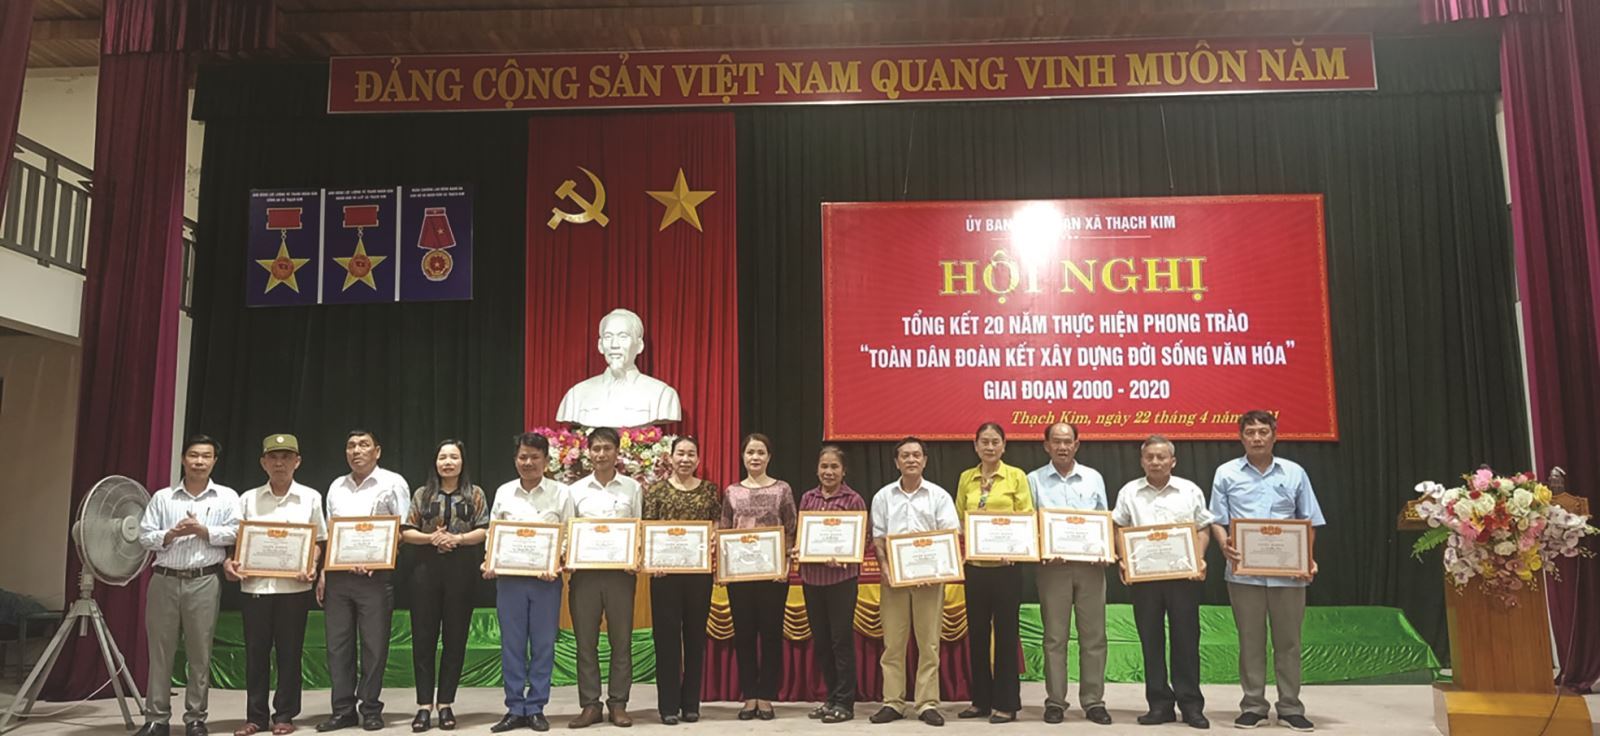 Hà Tĩnh: Huyện Lộc Hà đẩy mạnh phong trào “Toàn dân đoàn kết xây dựng đời sống văn hóa” gắn với xây dựng nông thôn mới